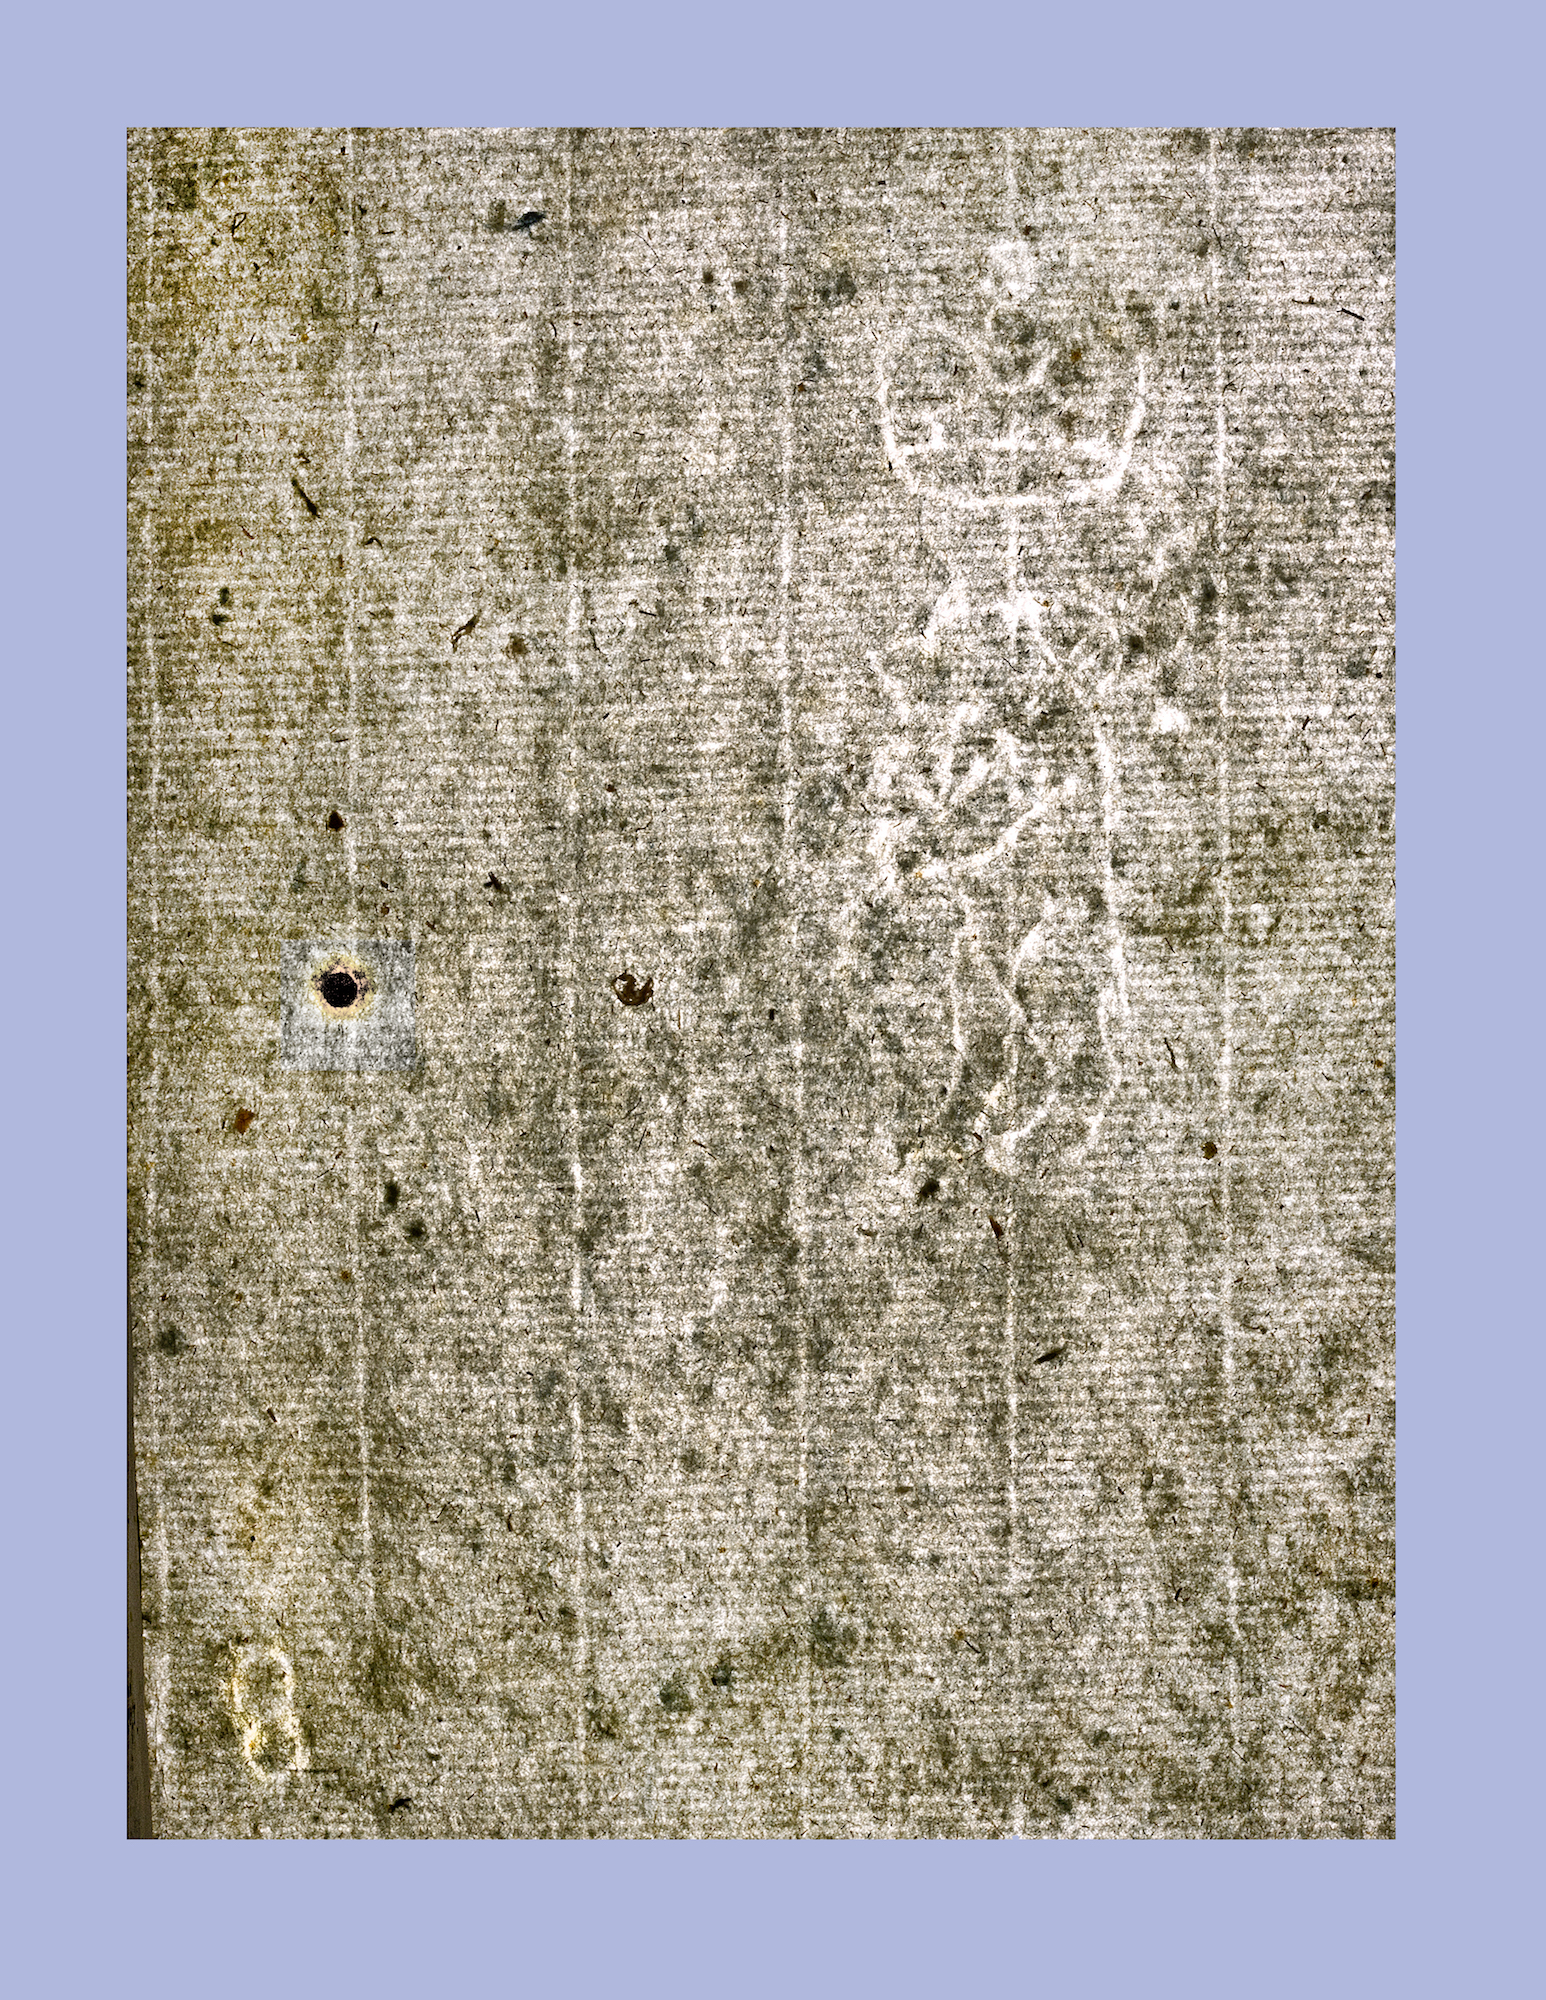 51.IV. Фрагмент припереплетного листа с филигранью